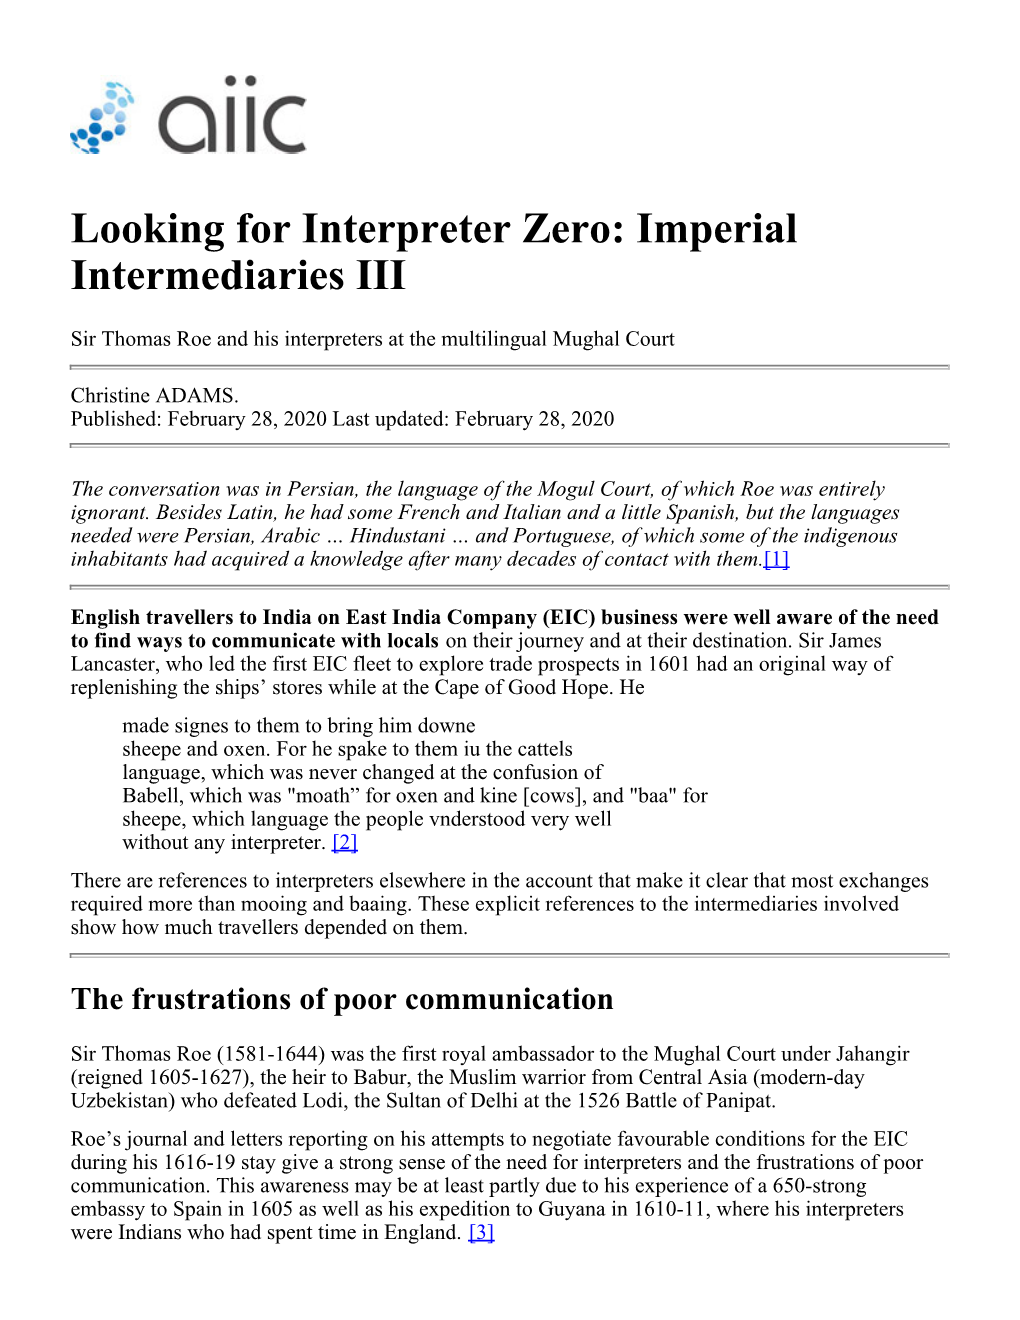 Looking for Interpreter Zero: Imperial Intermediaries III